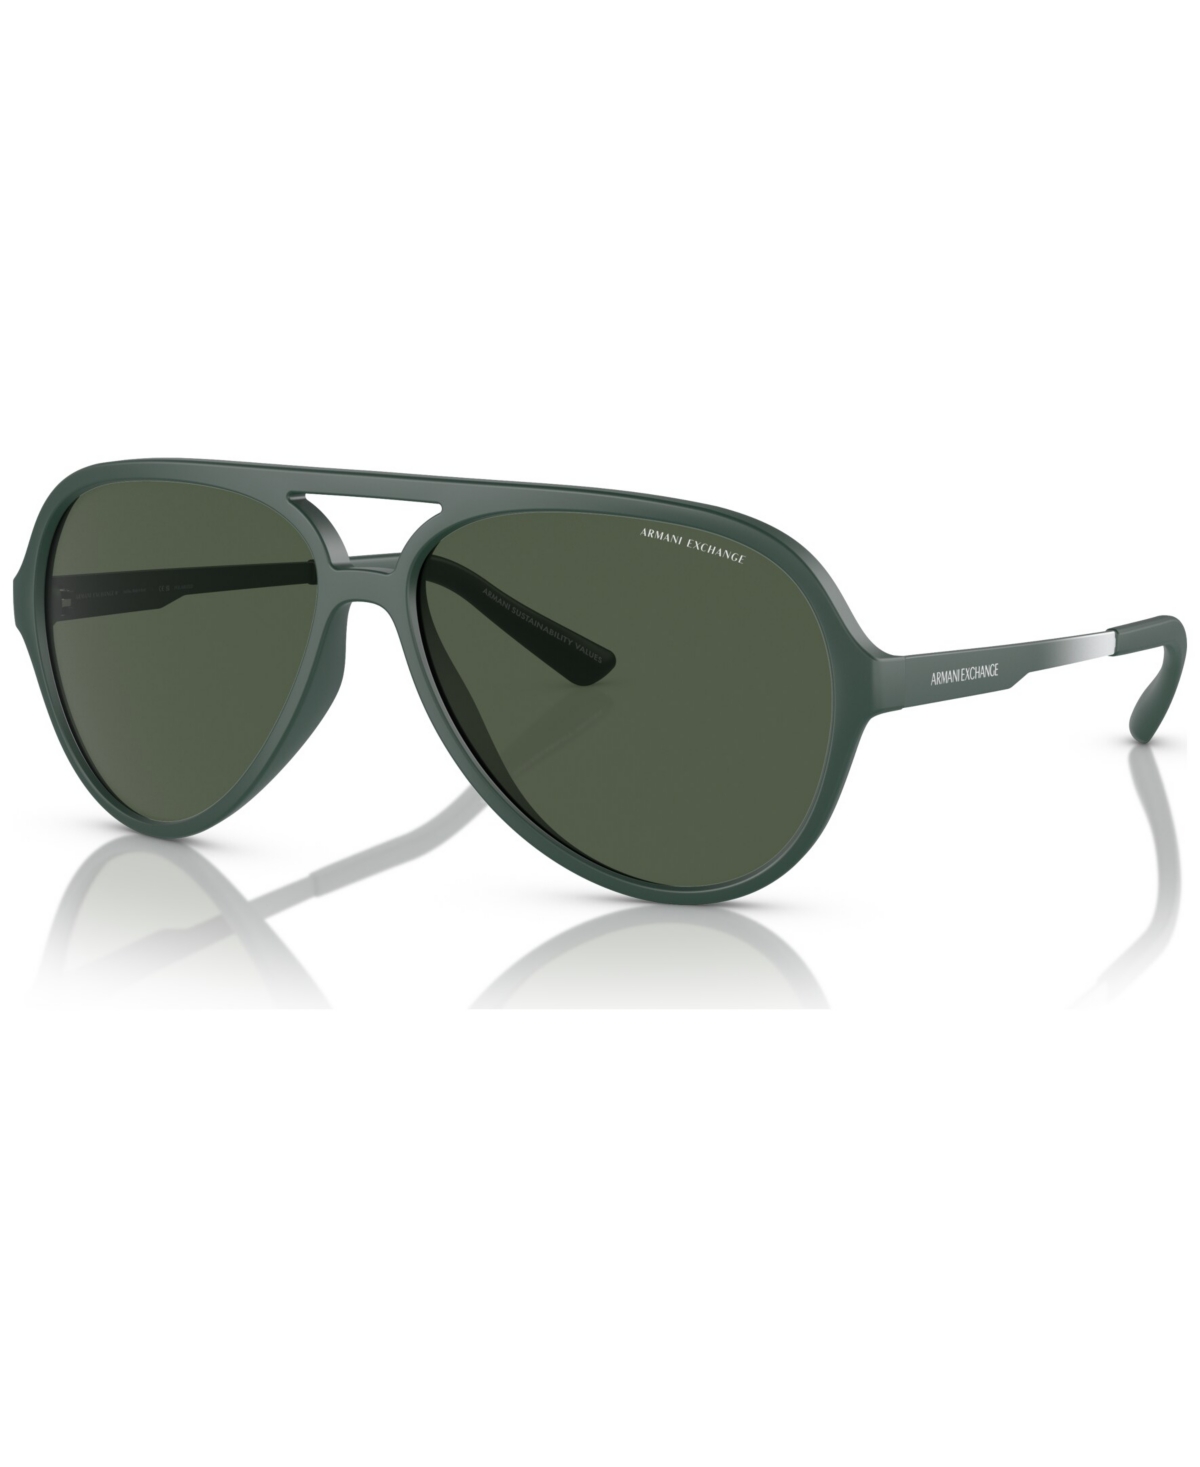 Ax Armani Exchange Men's Polarized Sunglasses, Ax4133s In Matte Green